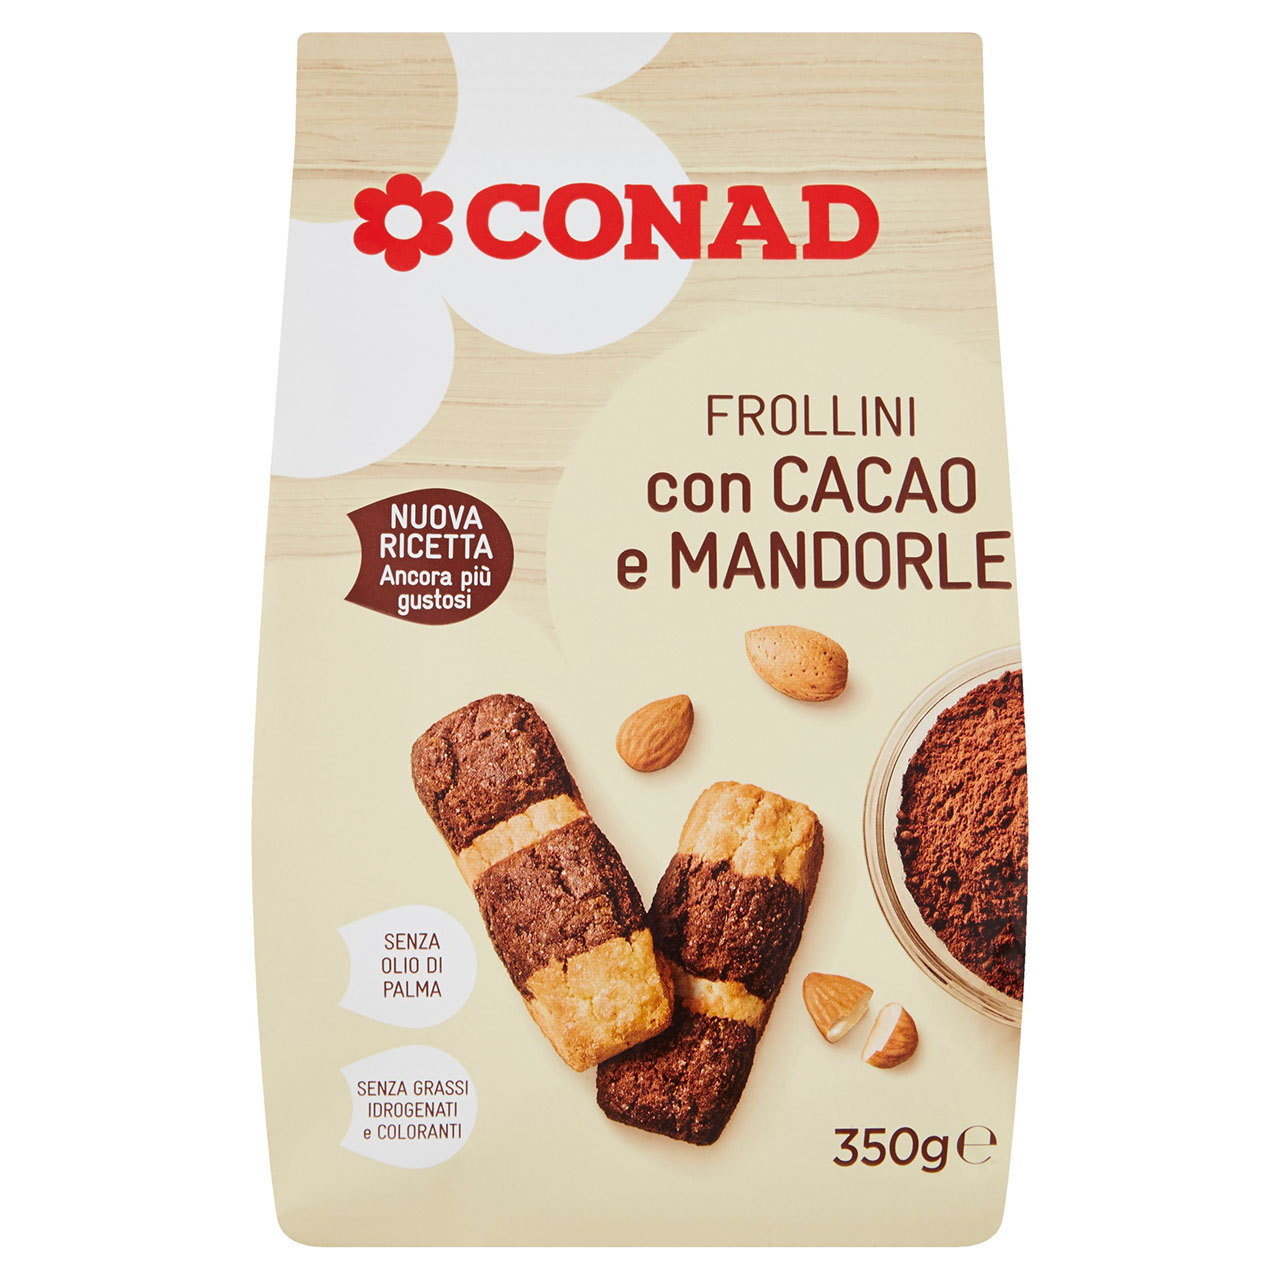 Frollini cacao e mandorle g 350 Conad online